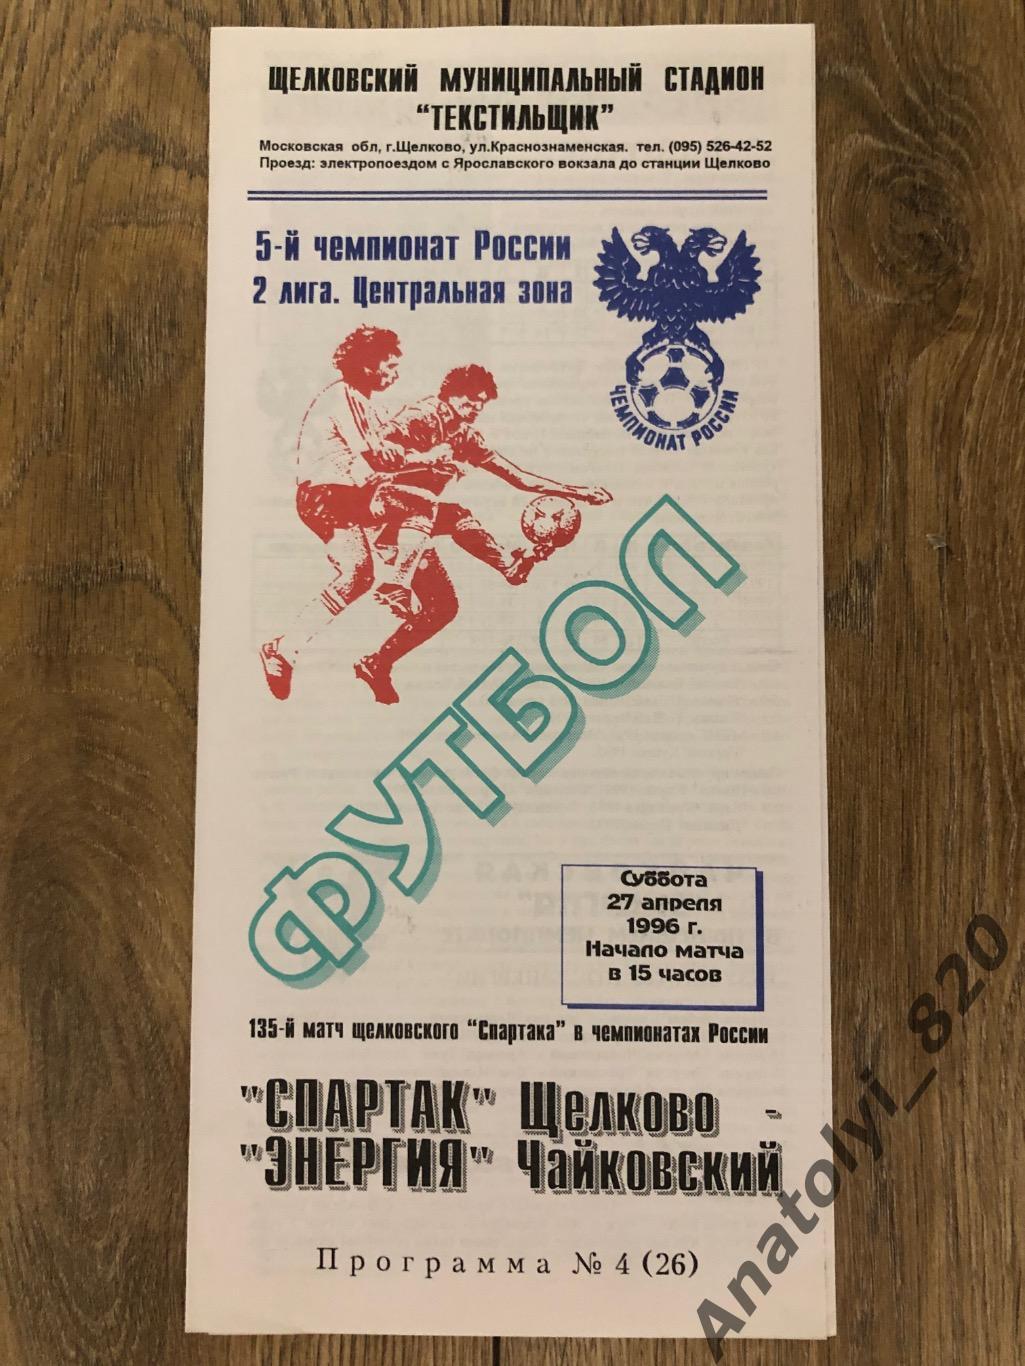 Спартак Щелково - Энергия Чайковский, 27.04.1996